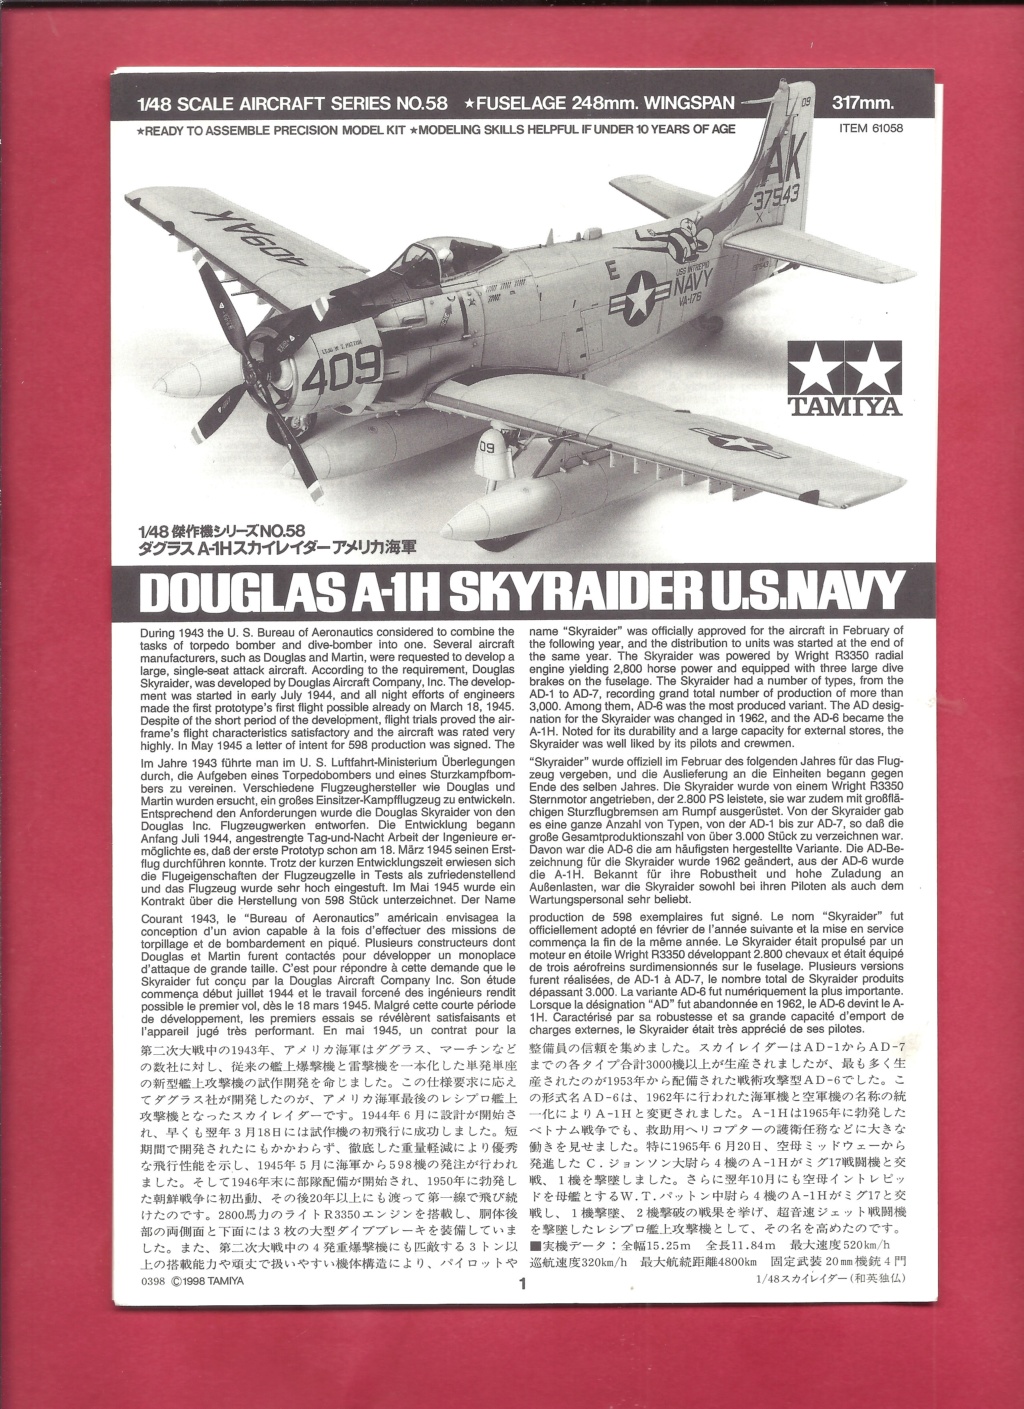 [TAMIYA] DOUGLAS A-1H & AD-4  SKYRAIDER 1/48ème Réf 61058F Série limitée Notice Tami1039